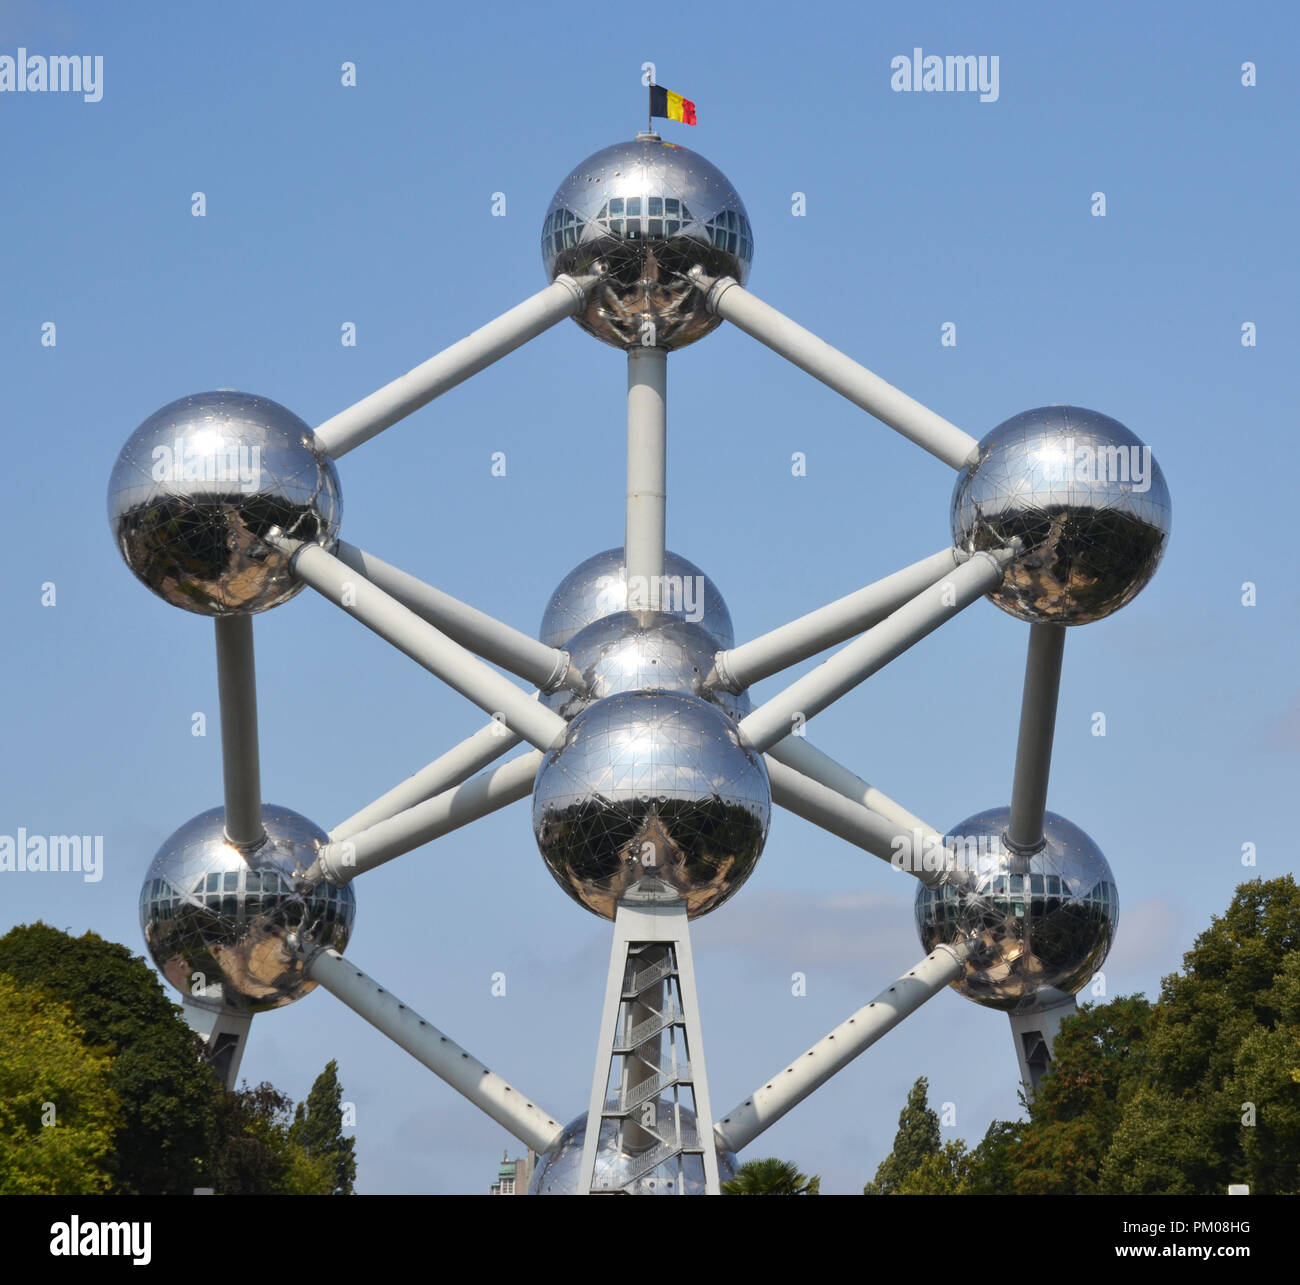 Brüssel, Belgien - 19 August 2018: Atomium Gebäude für die Expo 58, der 1958 die Weltausstellung in Brüssel Welt, in Brüssel, Belgien, gebaut. Stockfoto